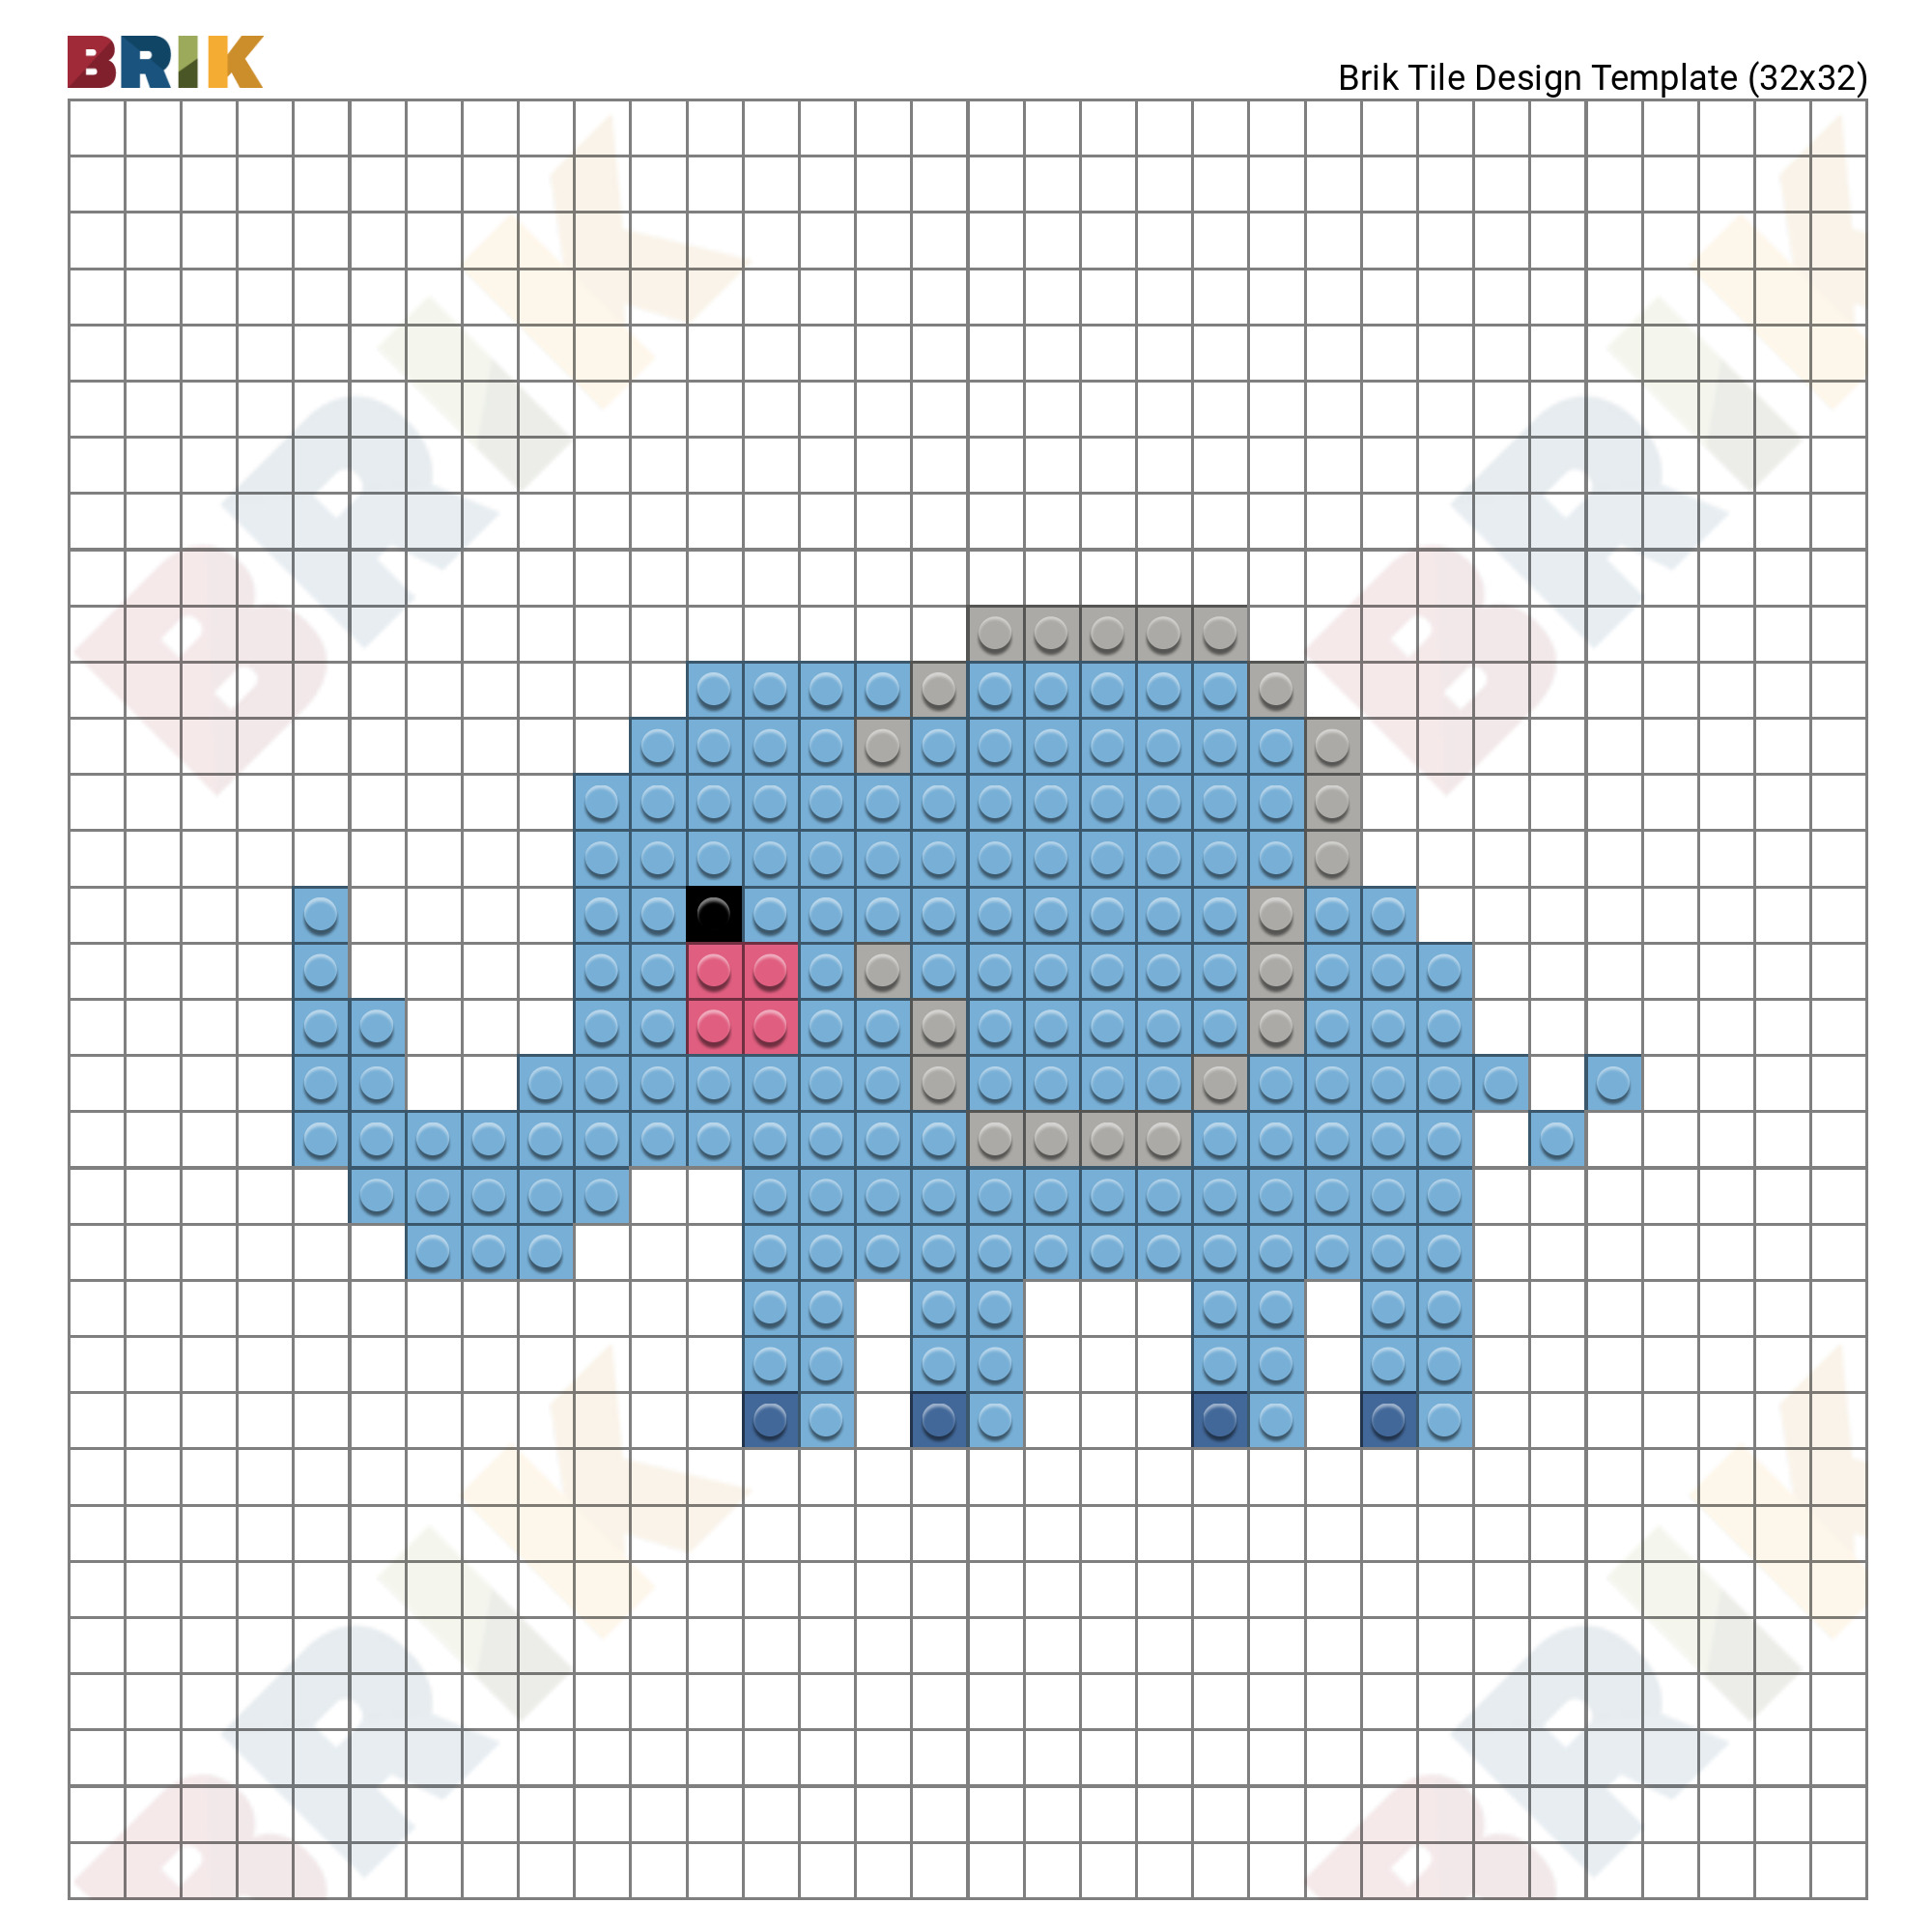 Elephant Pixel Art Brik 880 x 581 png 17kb. elephant pixel art brik.